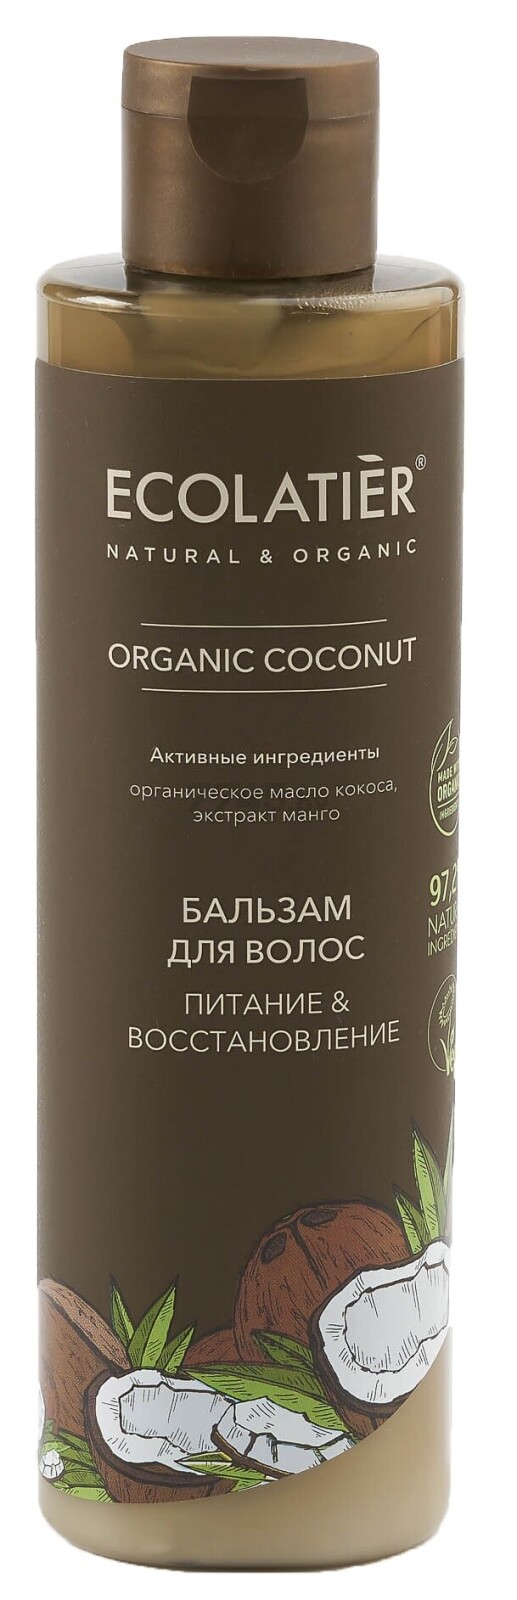 Бальзам ECOLATIER Organic Coconut Питание и Восстановление 250 мл (4620046172682)